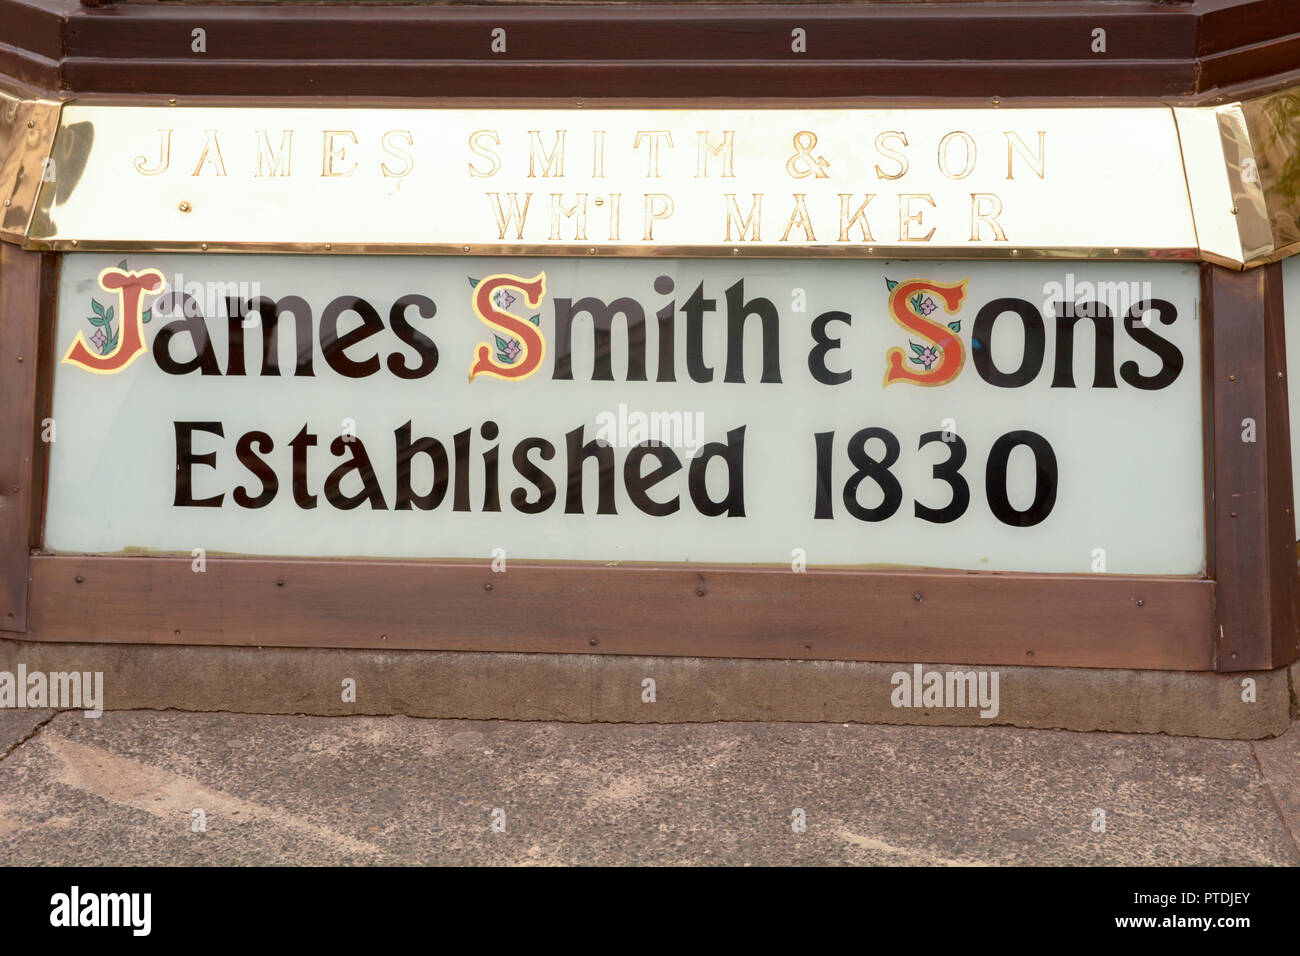 James Smith & Sons - Shop - 1830 établi ce signe montre également que ce détaillant est un fouet bouilloire - basé à Londres en Angleterre Banque D'Images